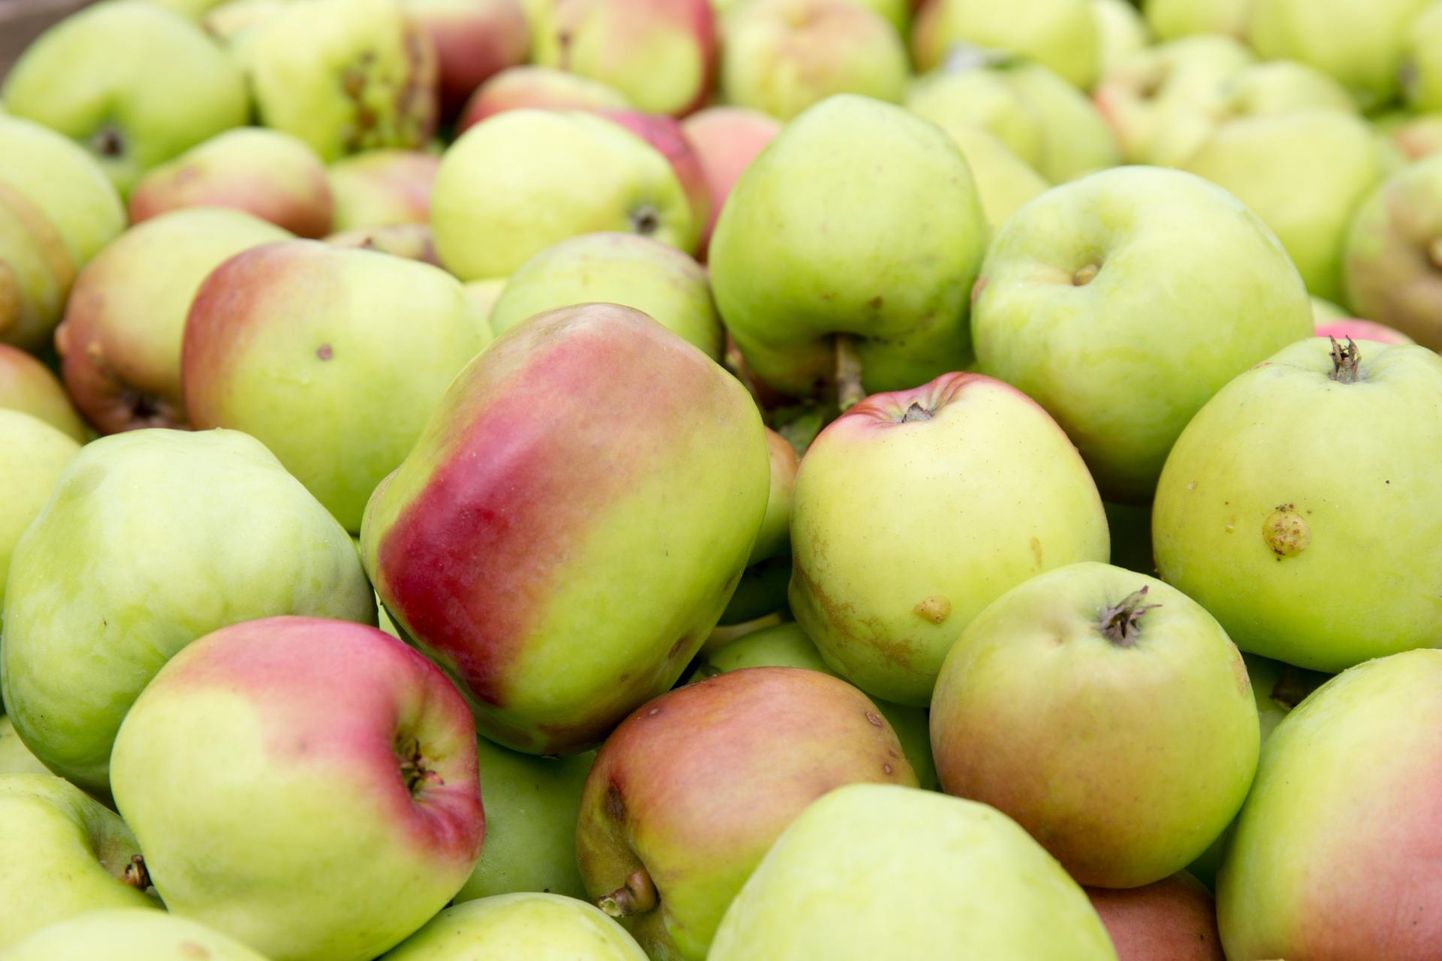 Need õunad on kindlasti pärit Mulgi Õuna aiast. Õunad korjati 2017. aasta sügisel otse Sakala ajakirjaniku ja fotograafi silme all.